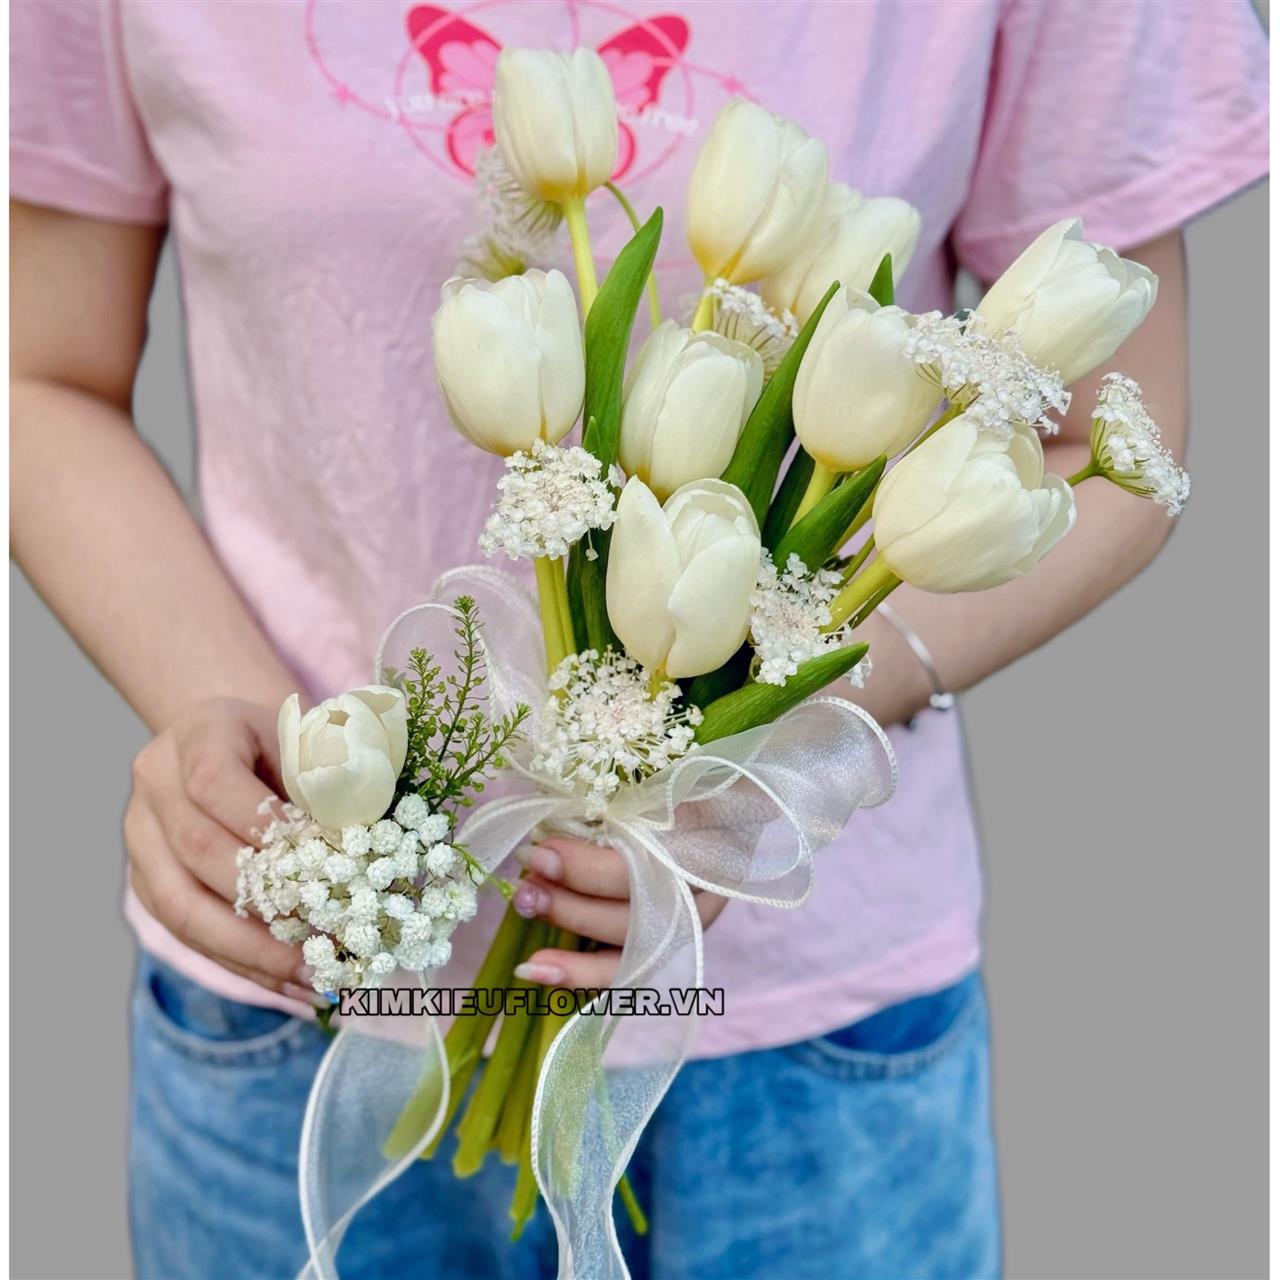 Bó hoa cưới đơn giản một màu trắng, mang vẻ đẹp tinh khôi và sang trọng.